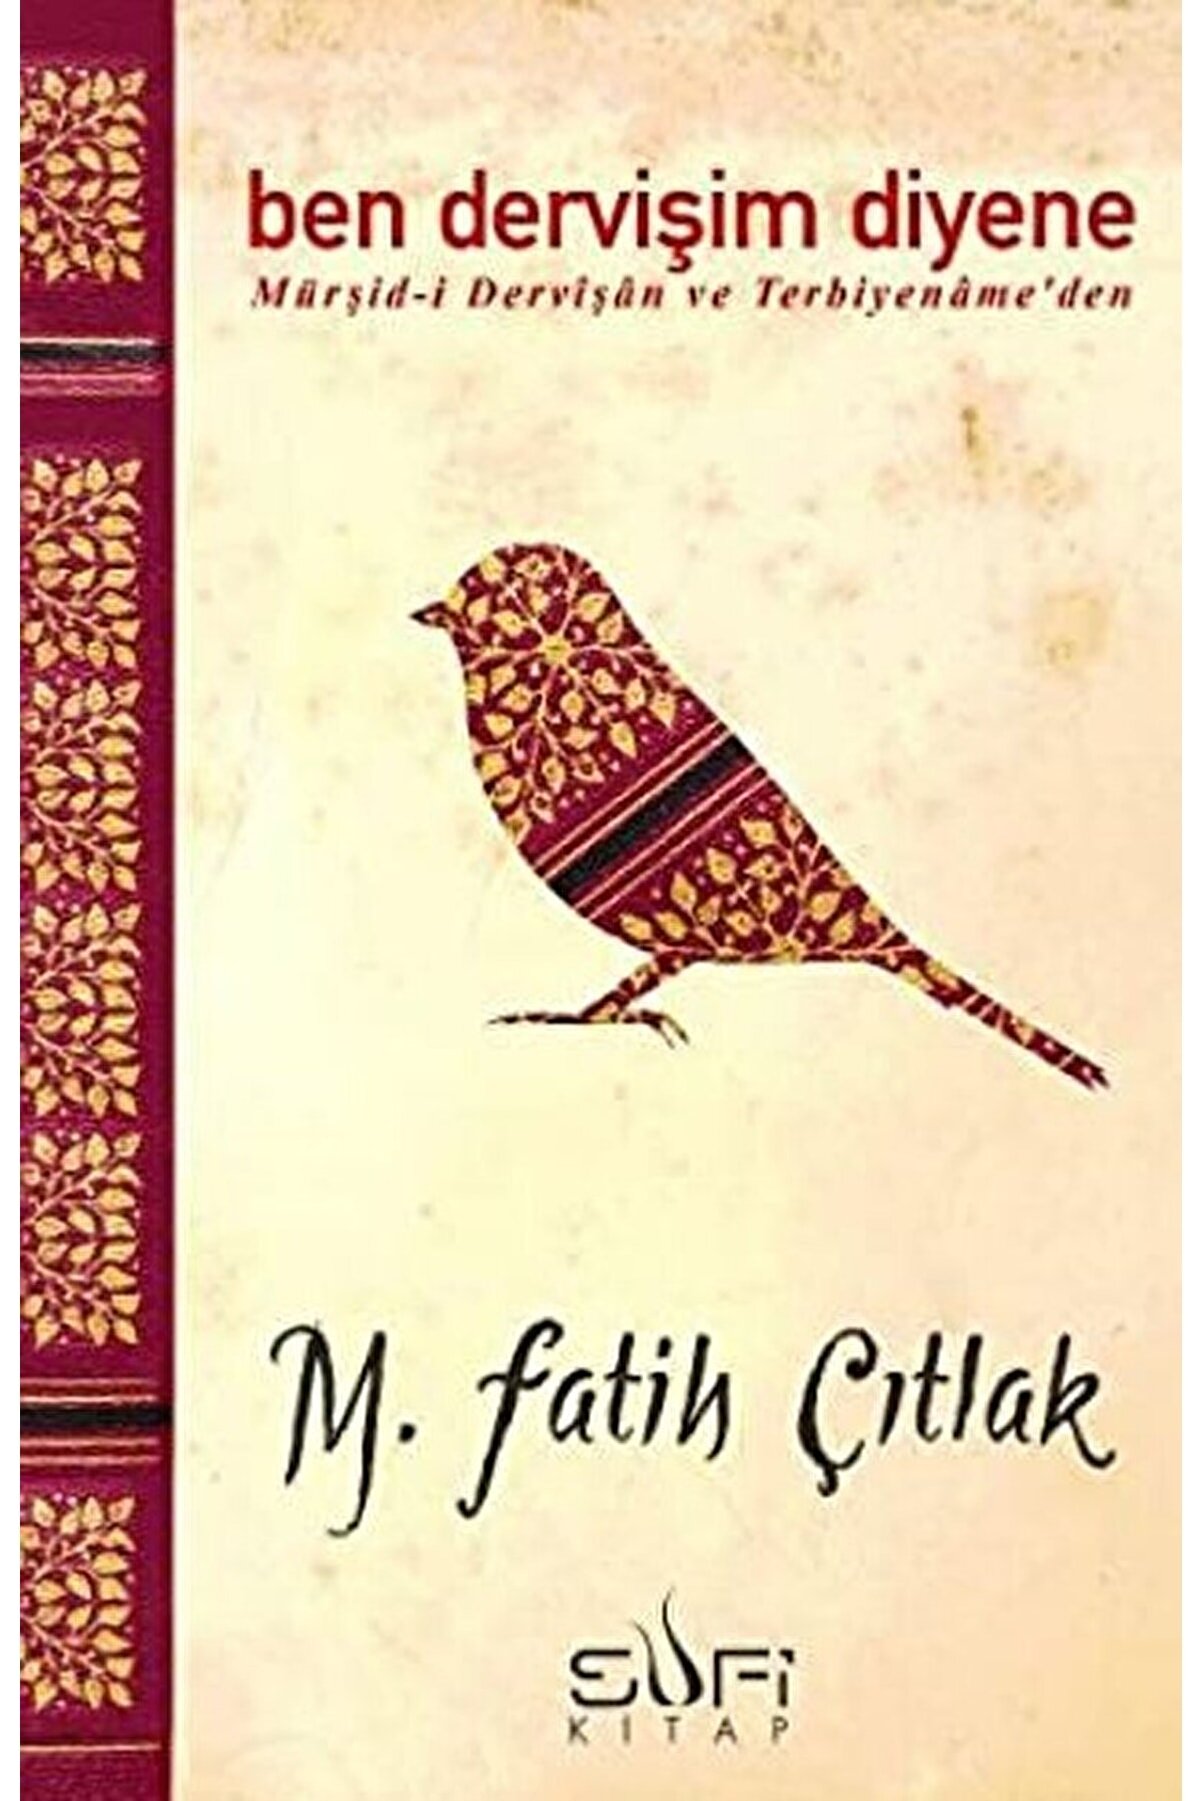 Sufi Kitap Ben Dervişim Diyene M. Fatih Çıtlak - M. Fatih Çıtlak